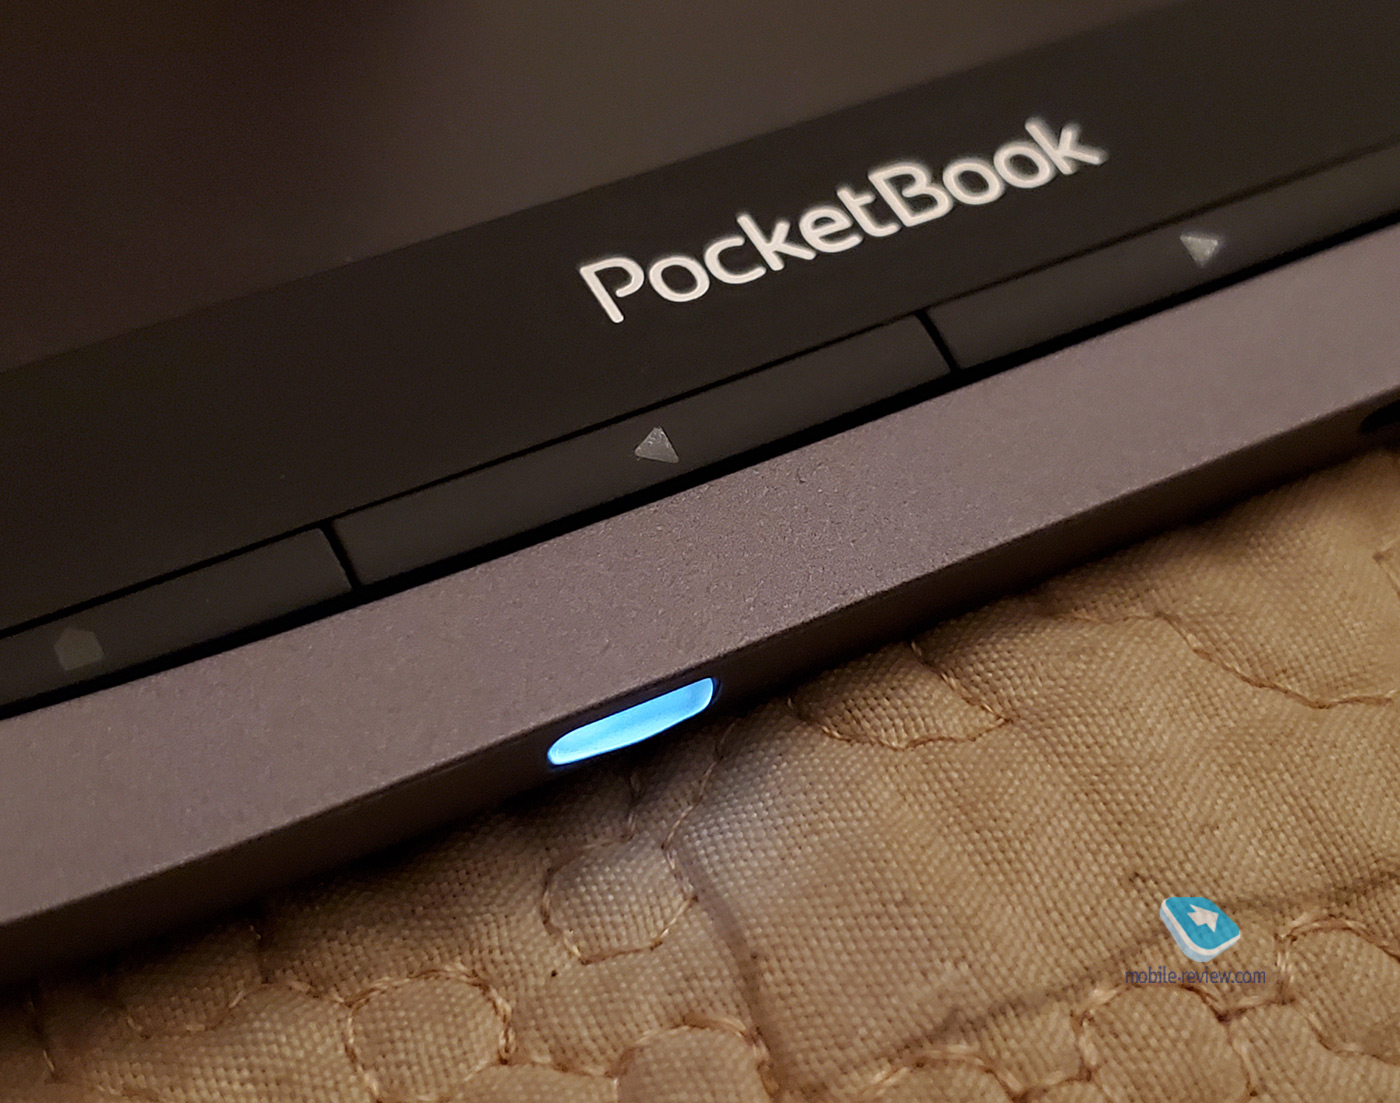 Обзор электронной книги PocketBook 740 Pro